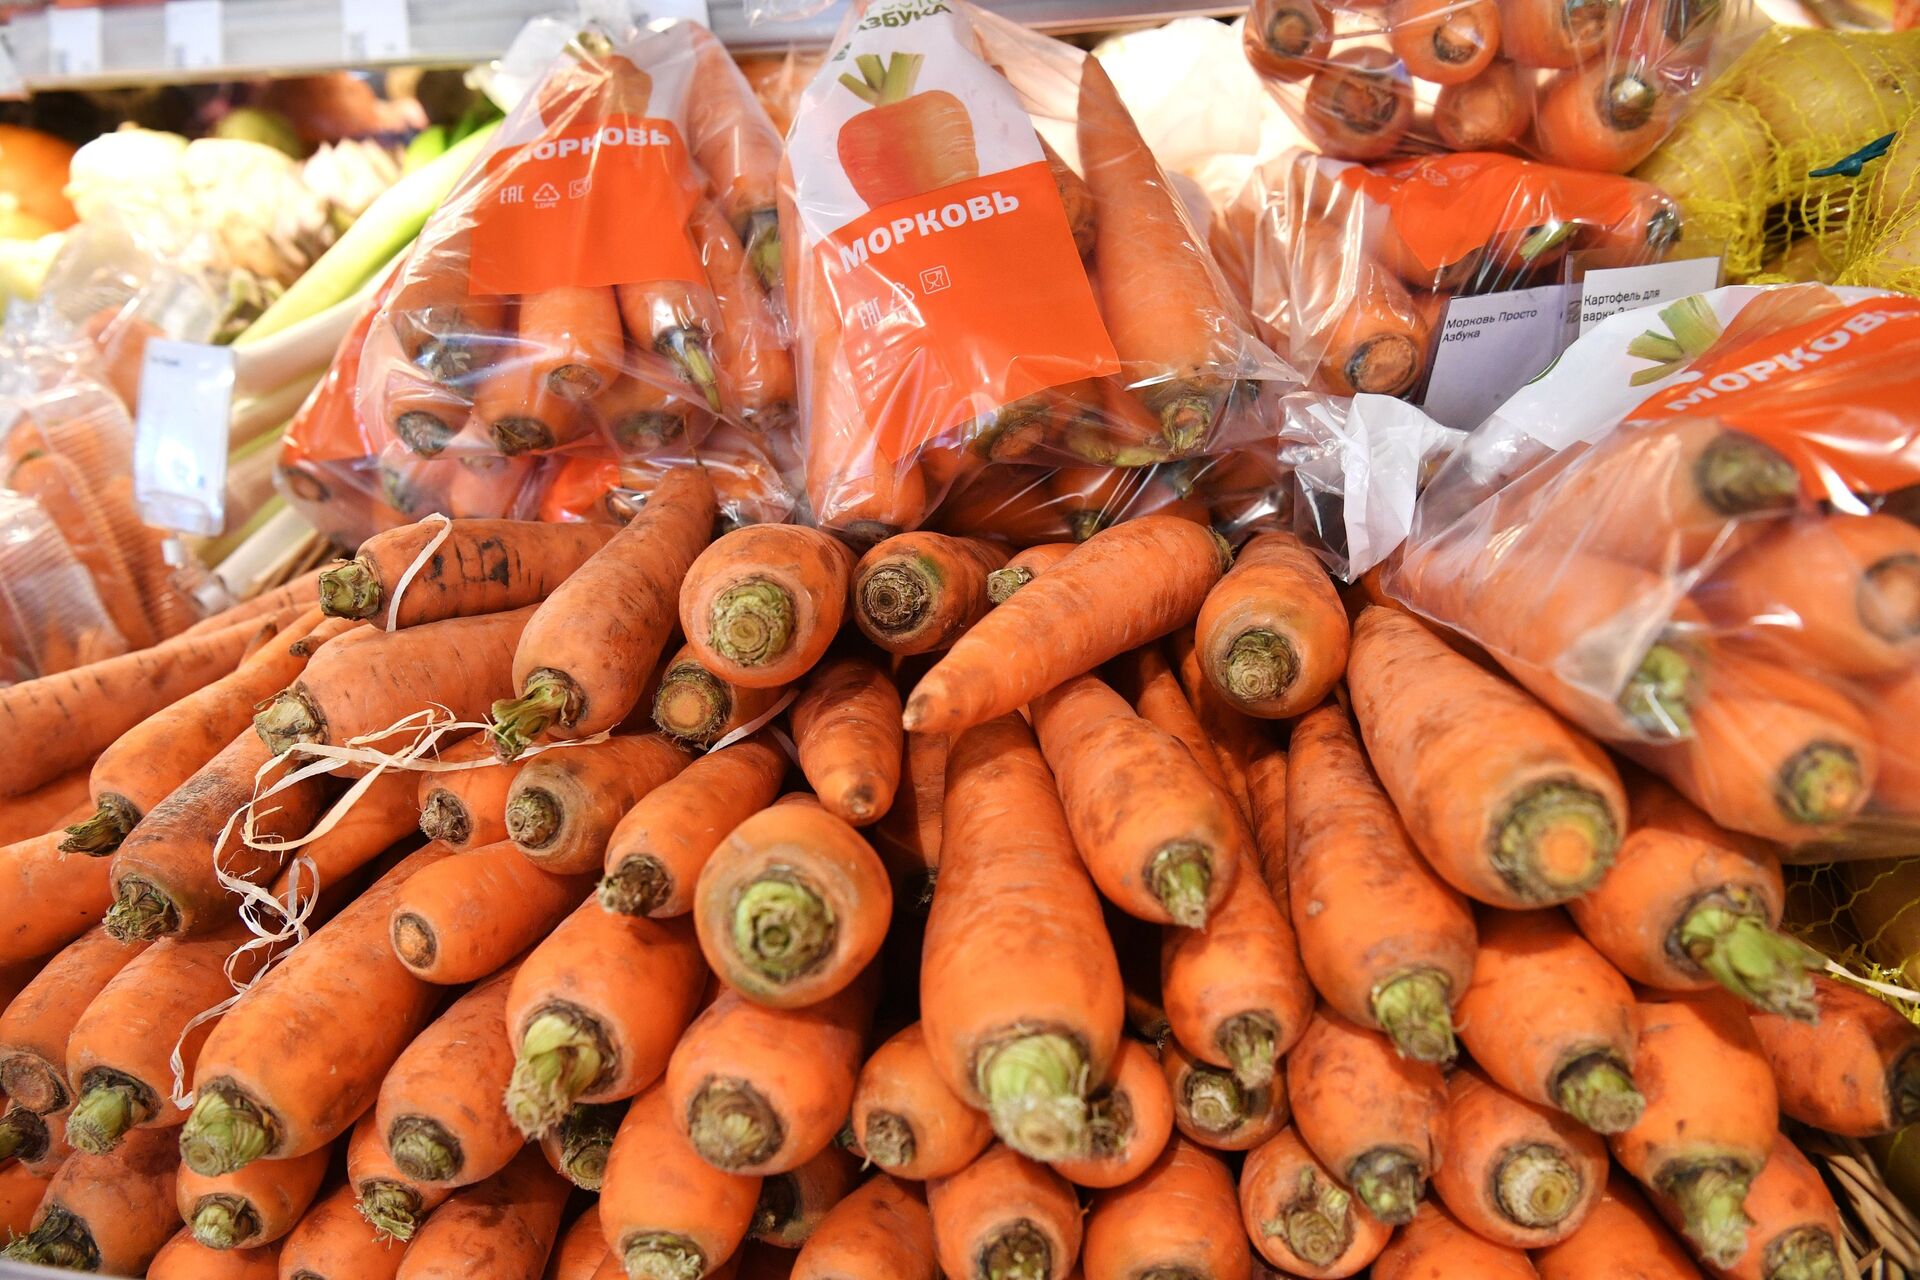 Продажа моркови в магазине Азбука Вкуса в Москве - ПРАЙМ, 1920, 05.08.2021